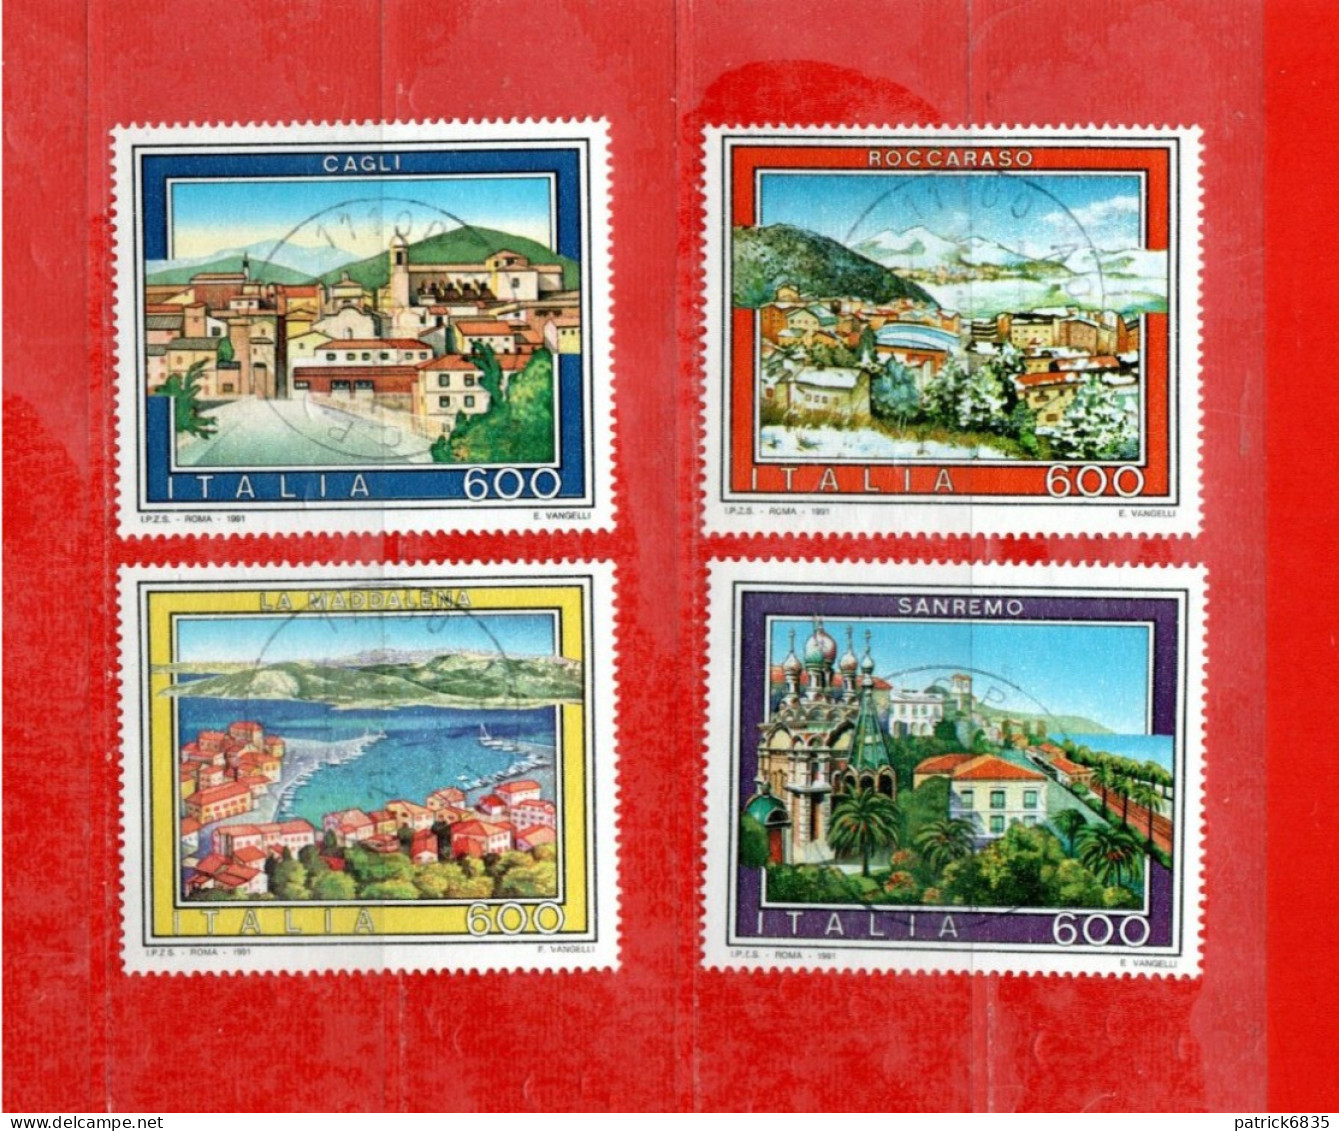 (Fr) Italia ° -1991 - TURISTICA, Sanremo-Cagli-Roccaraso-La Maddalena. Unif. 1972 à 1975.  LUSSO - 1991-00: Gebraucht